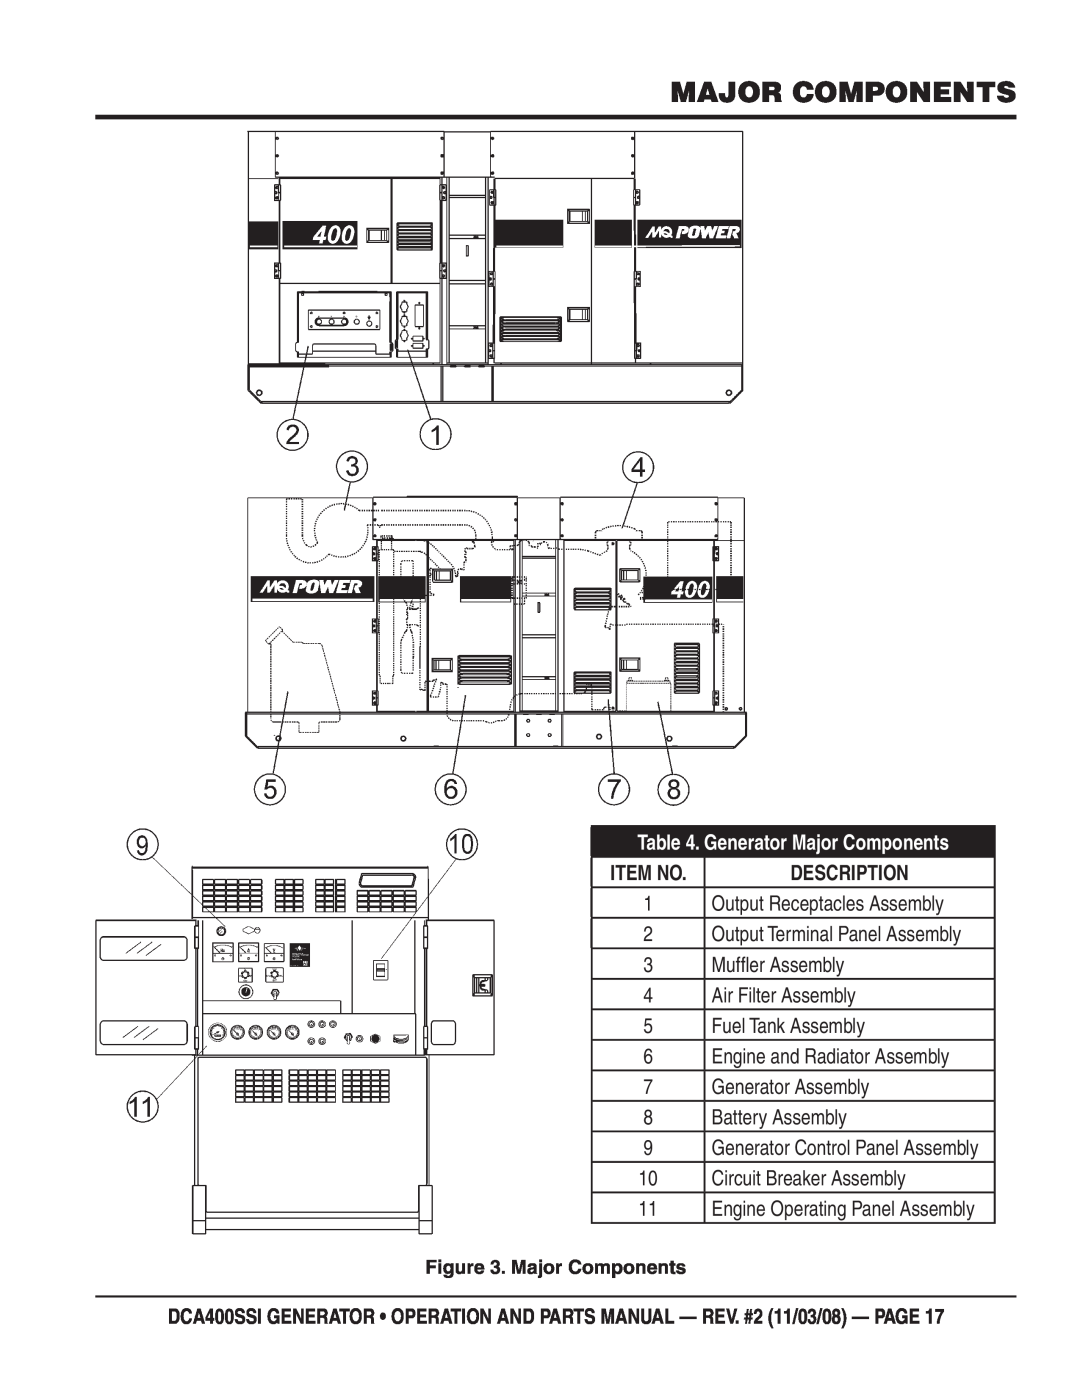 Multiquip DCA400SSI manual Generator Major Components, Item No 